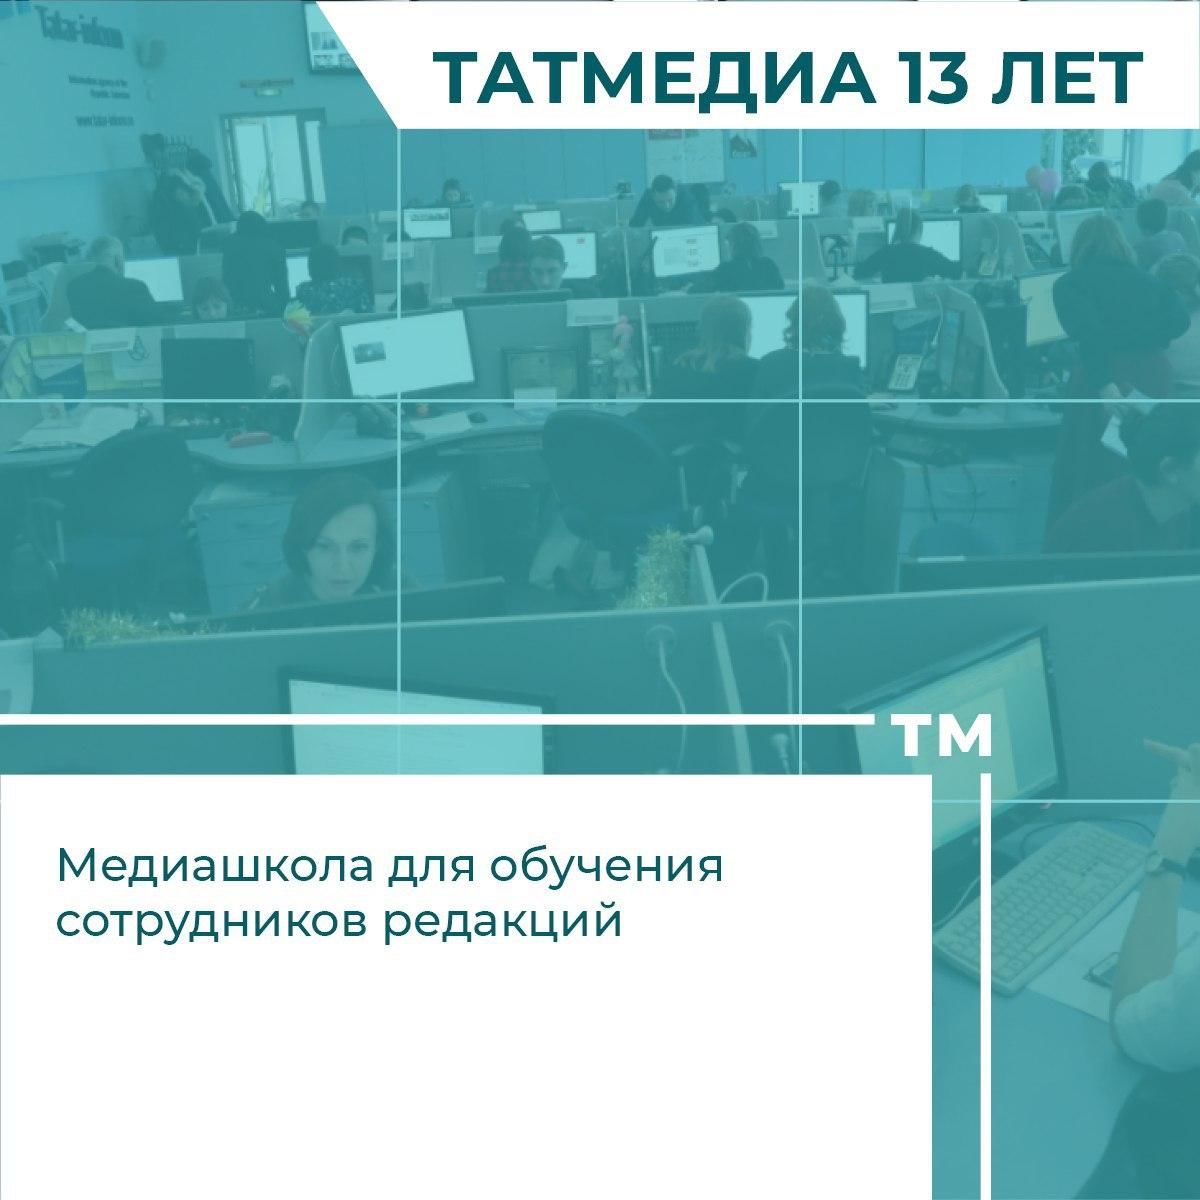 К 13-летию медиахолдинга «Татмедиа» рассказали о 13 фактах о нем